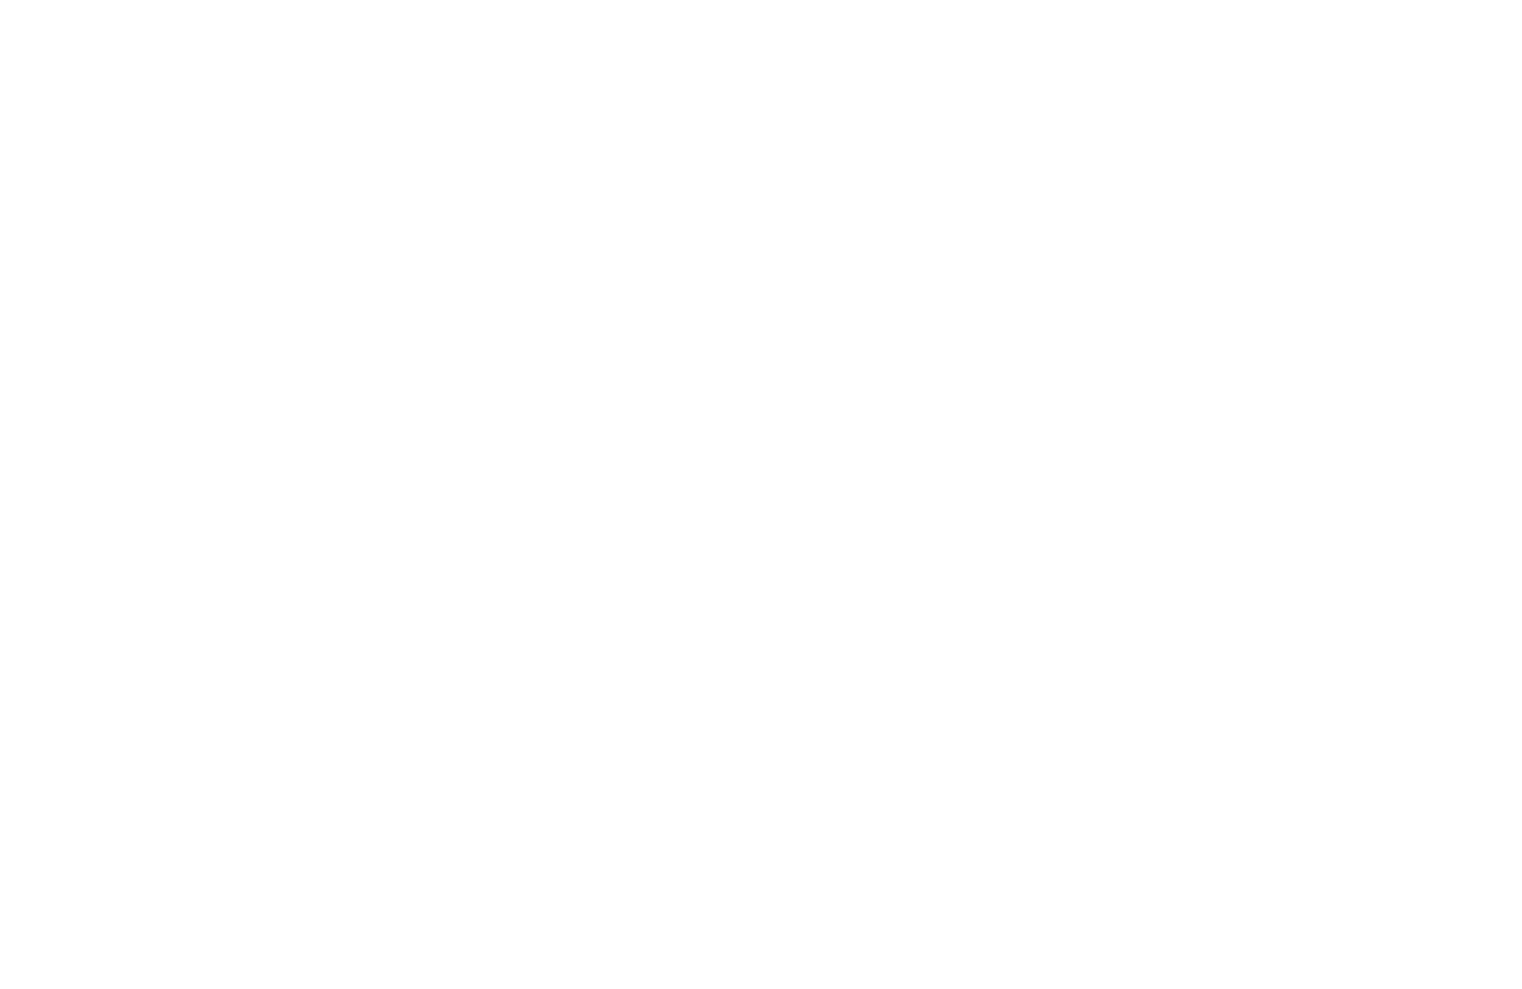 The Restaurant Group plc logo pour fonds sombres (PNG transparent)